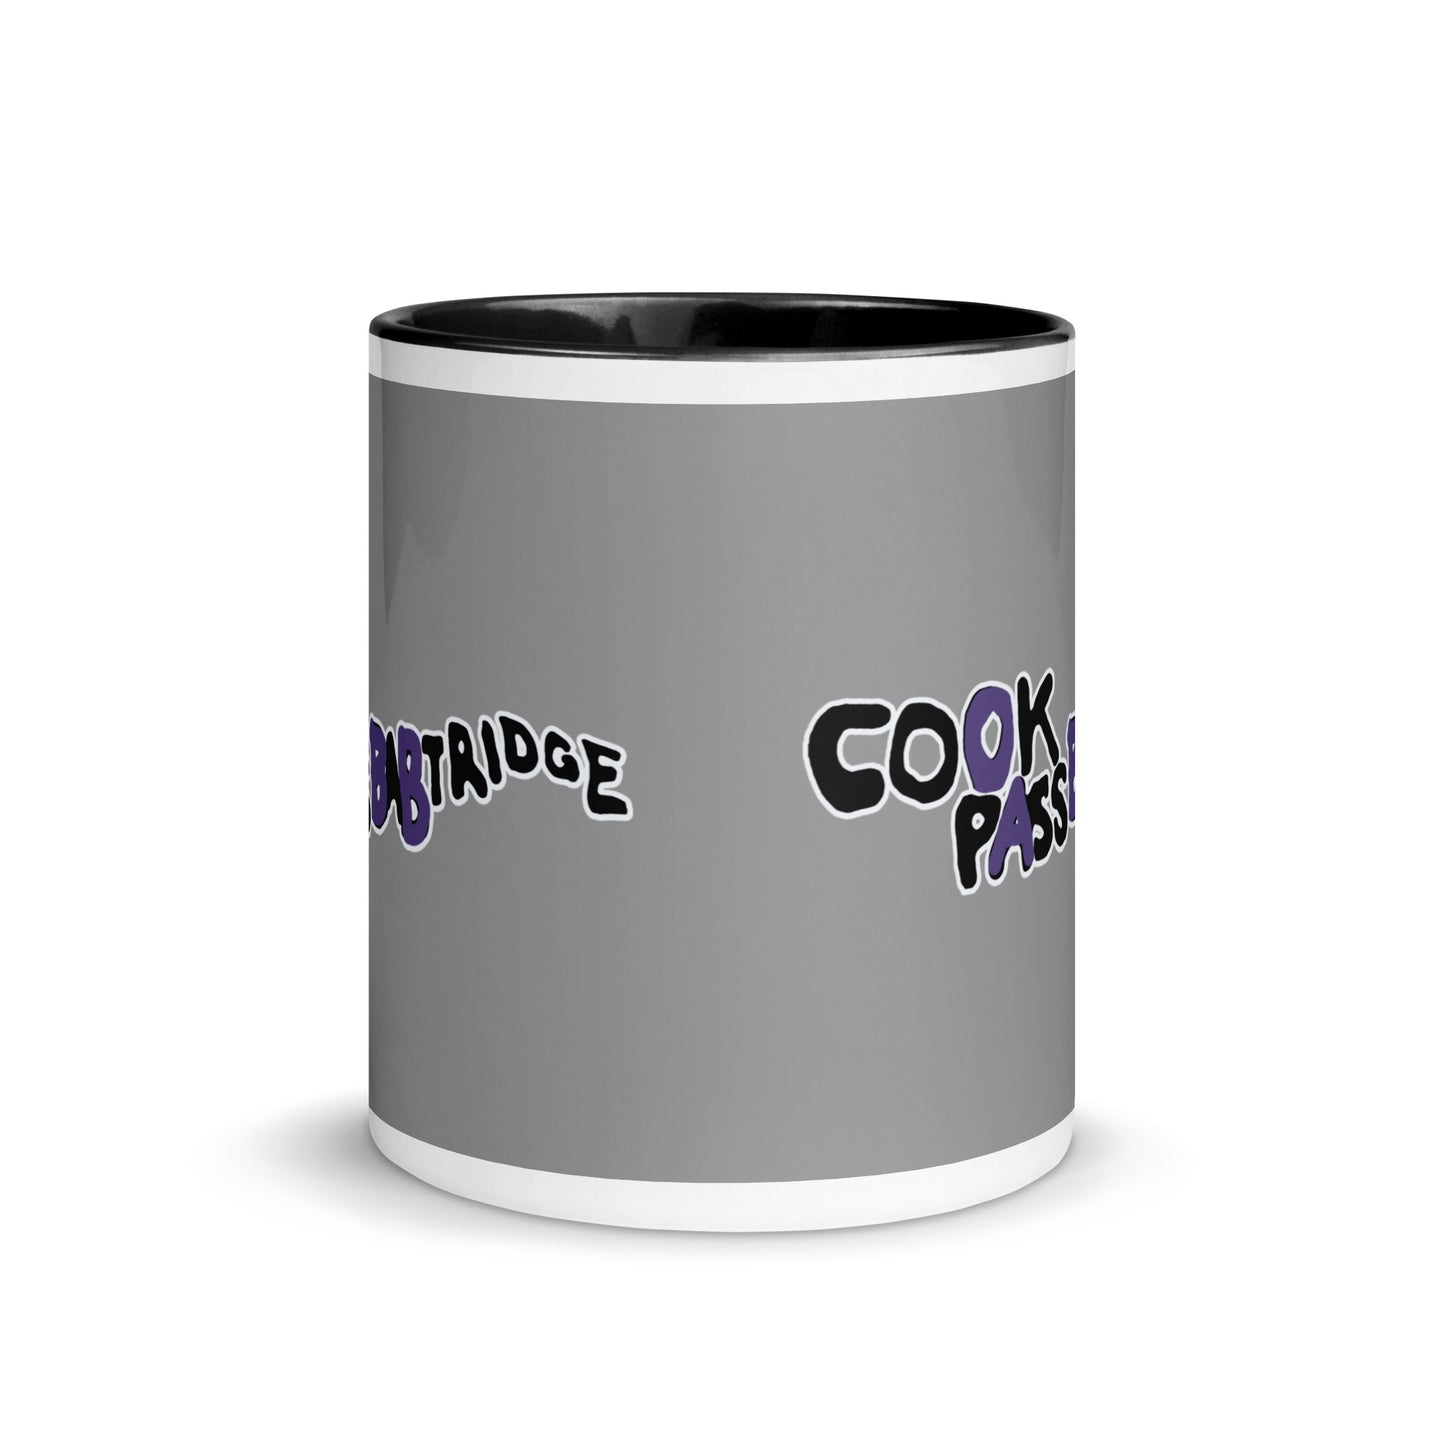 Cook Pass Babtridge Comedy Mug